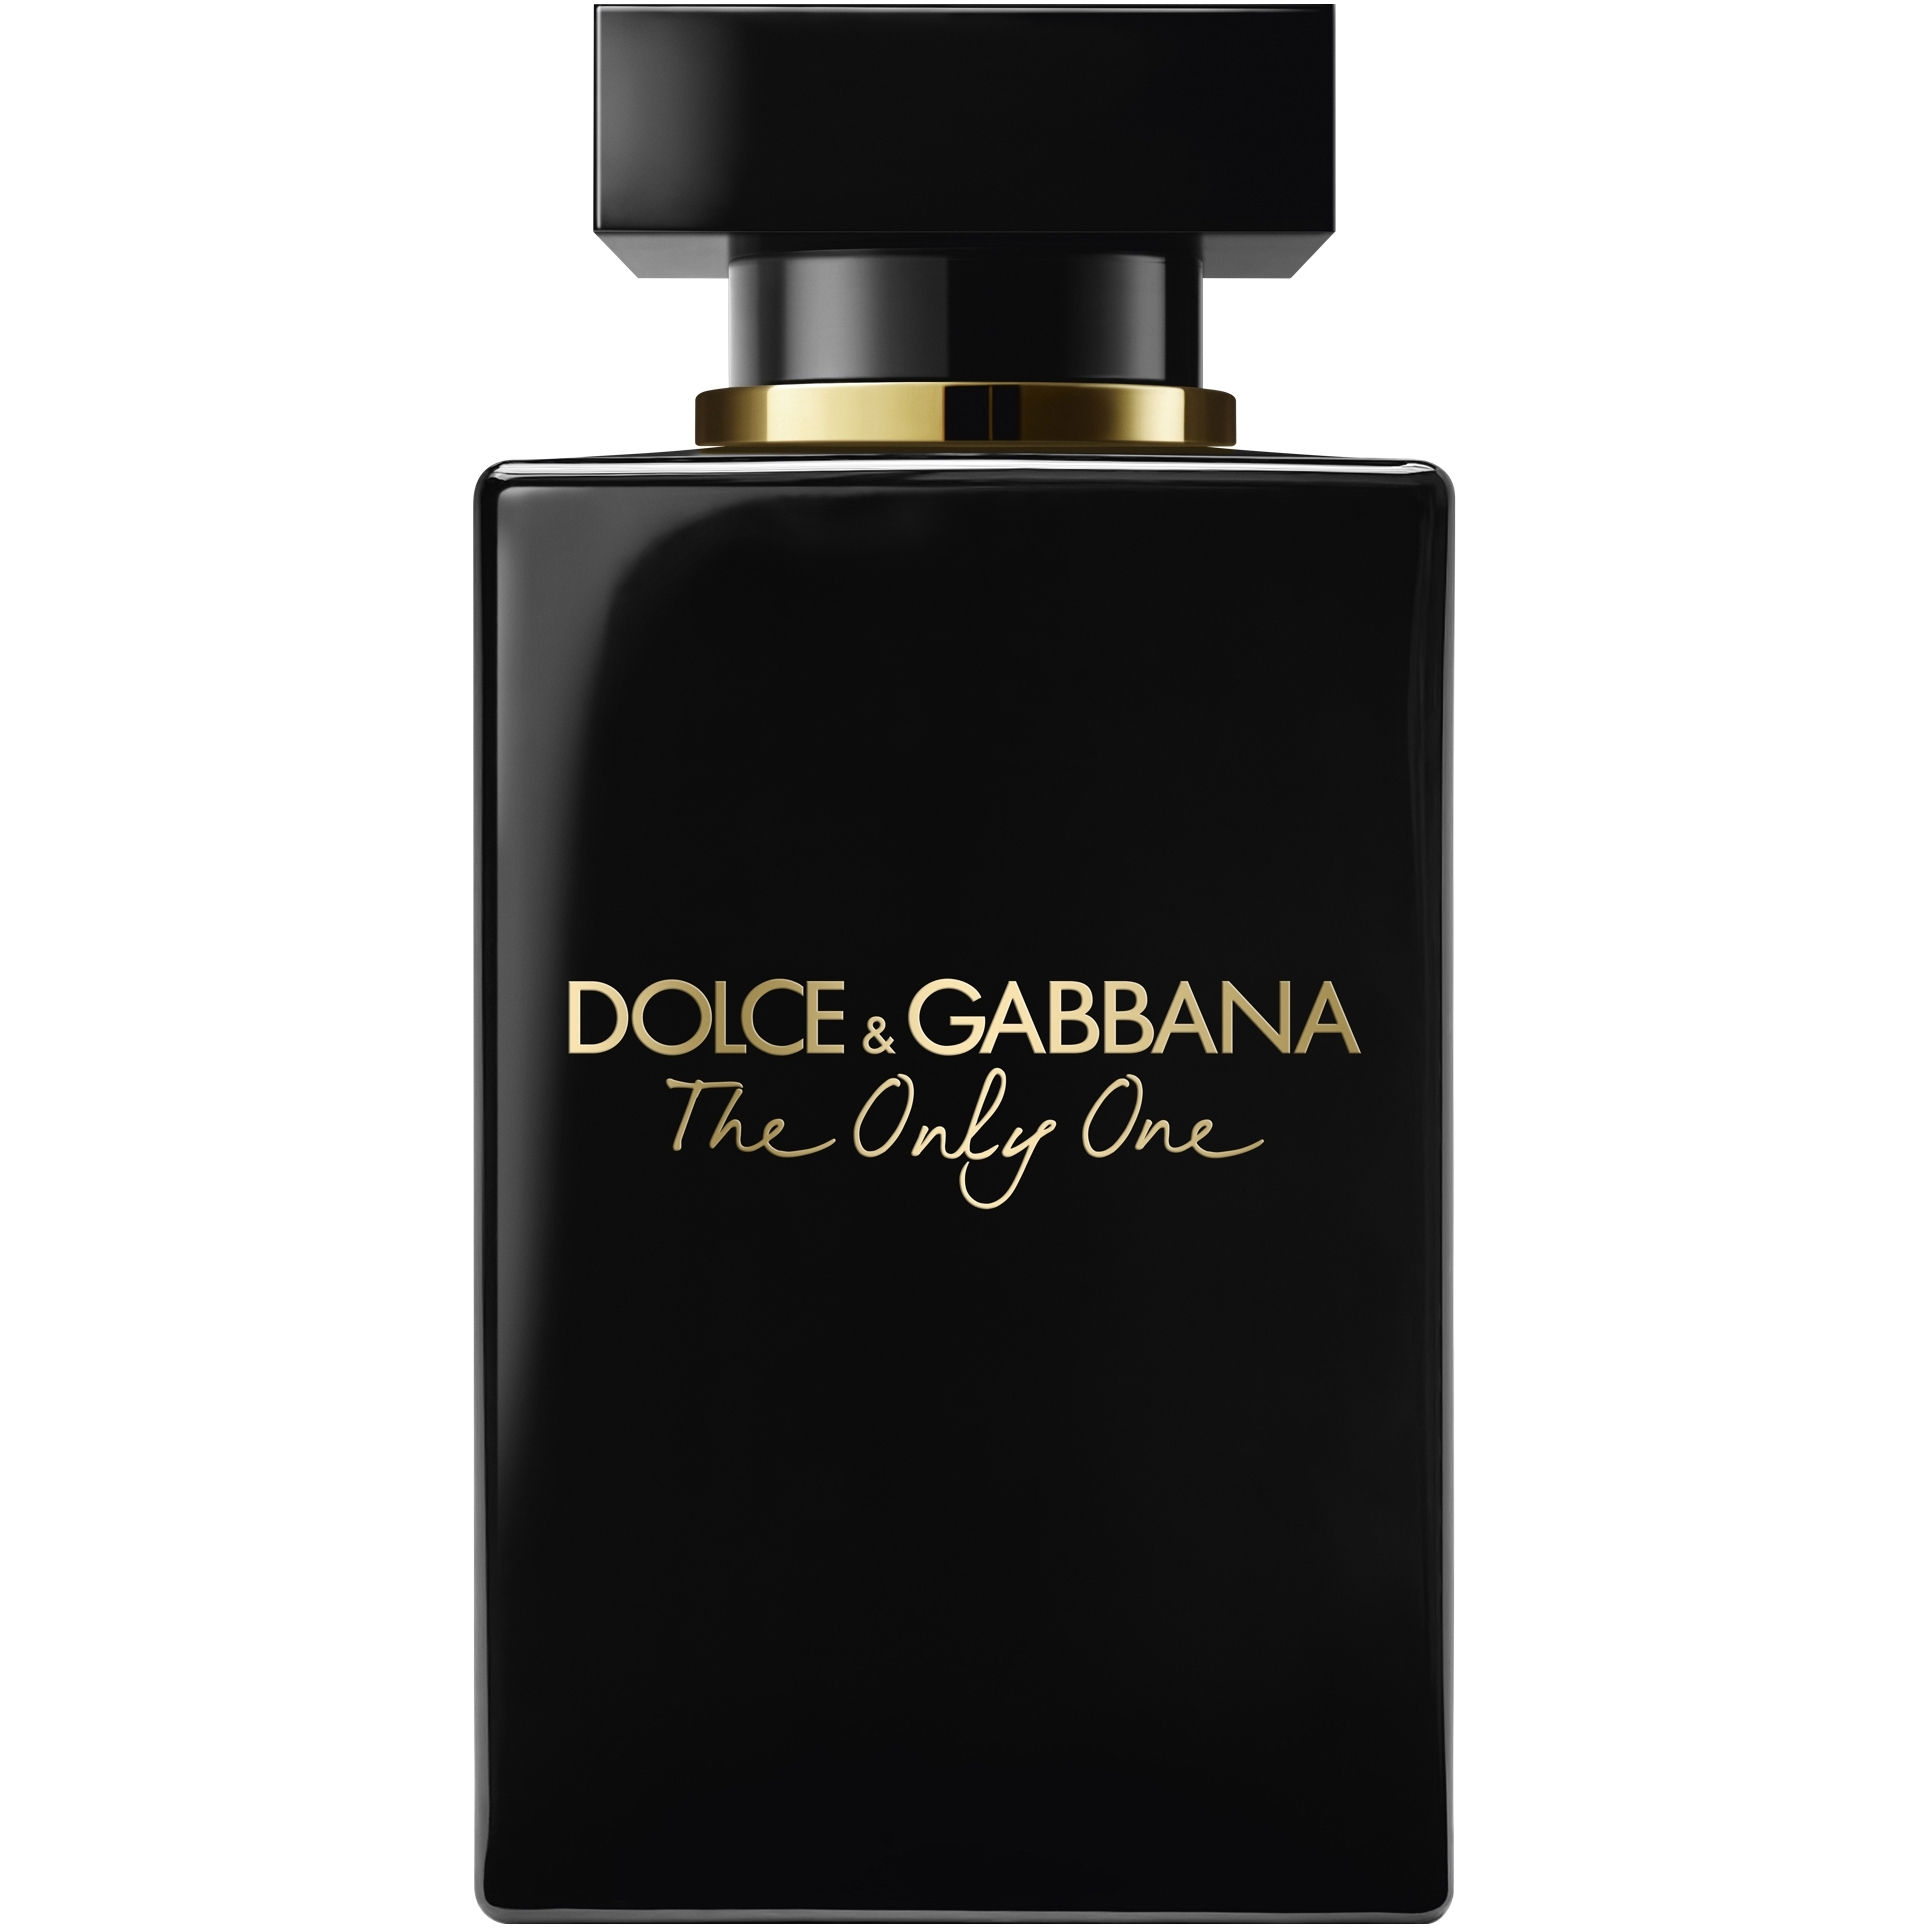 Dolce & Gabbana The Only One Intense Eau de parfum spray intense 50 ml